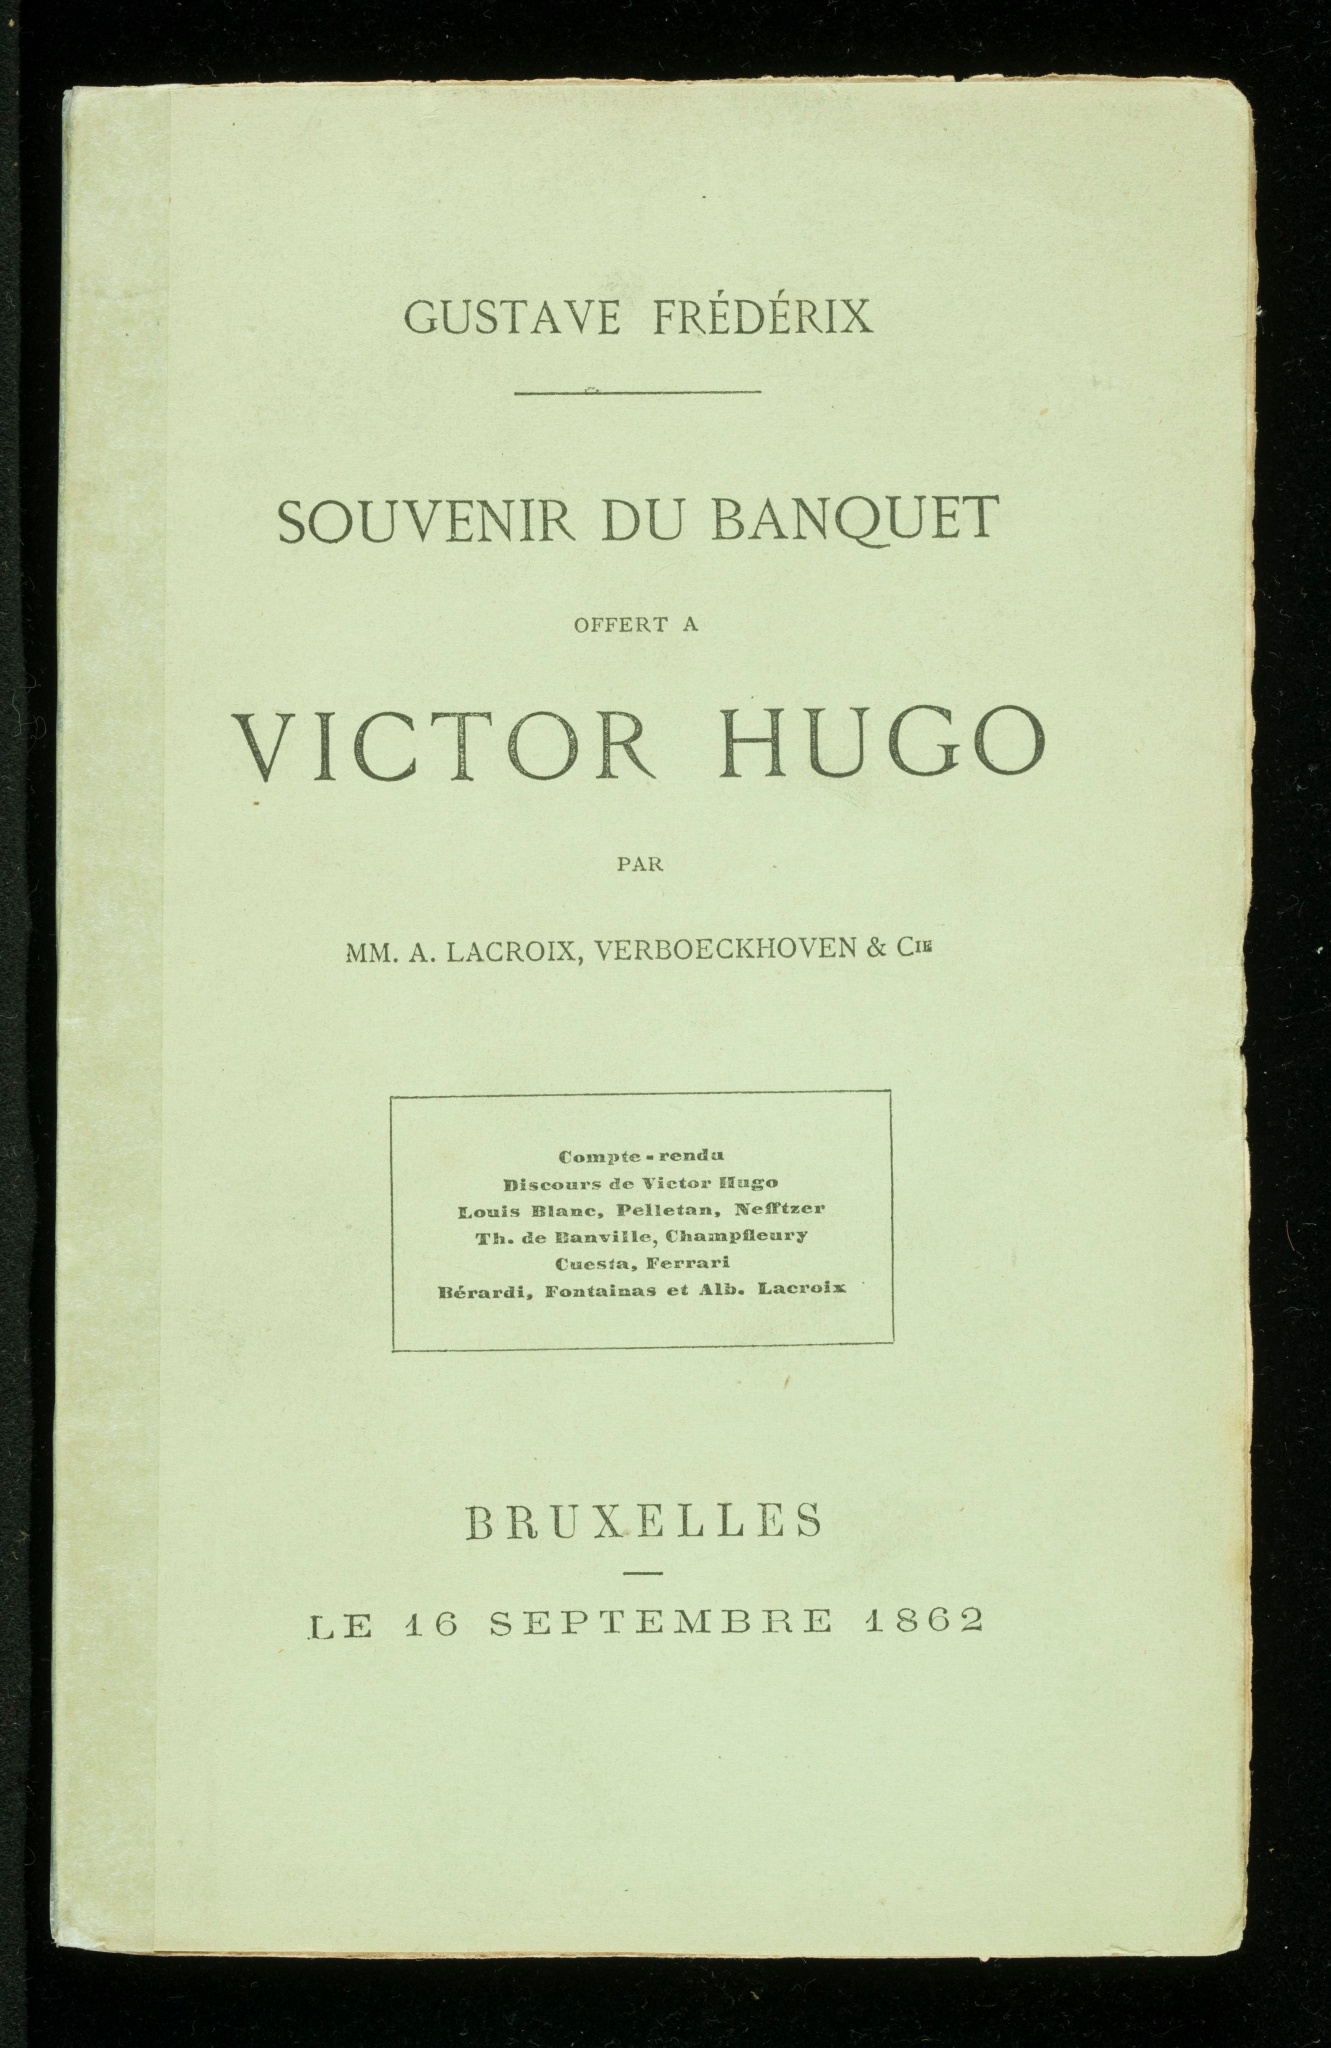 Souvenir du Banquet offert à Victor Hugo par MM A. Lacroix et Verboeckhoven & Cie